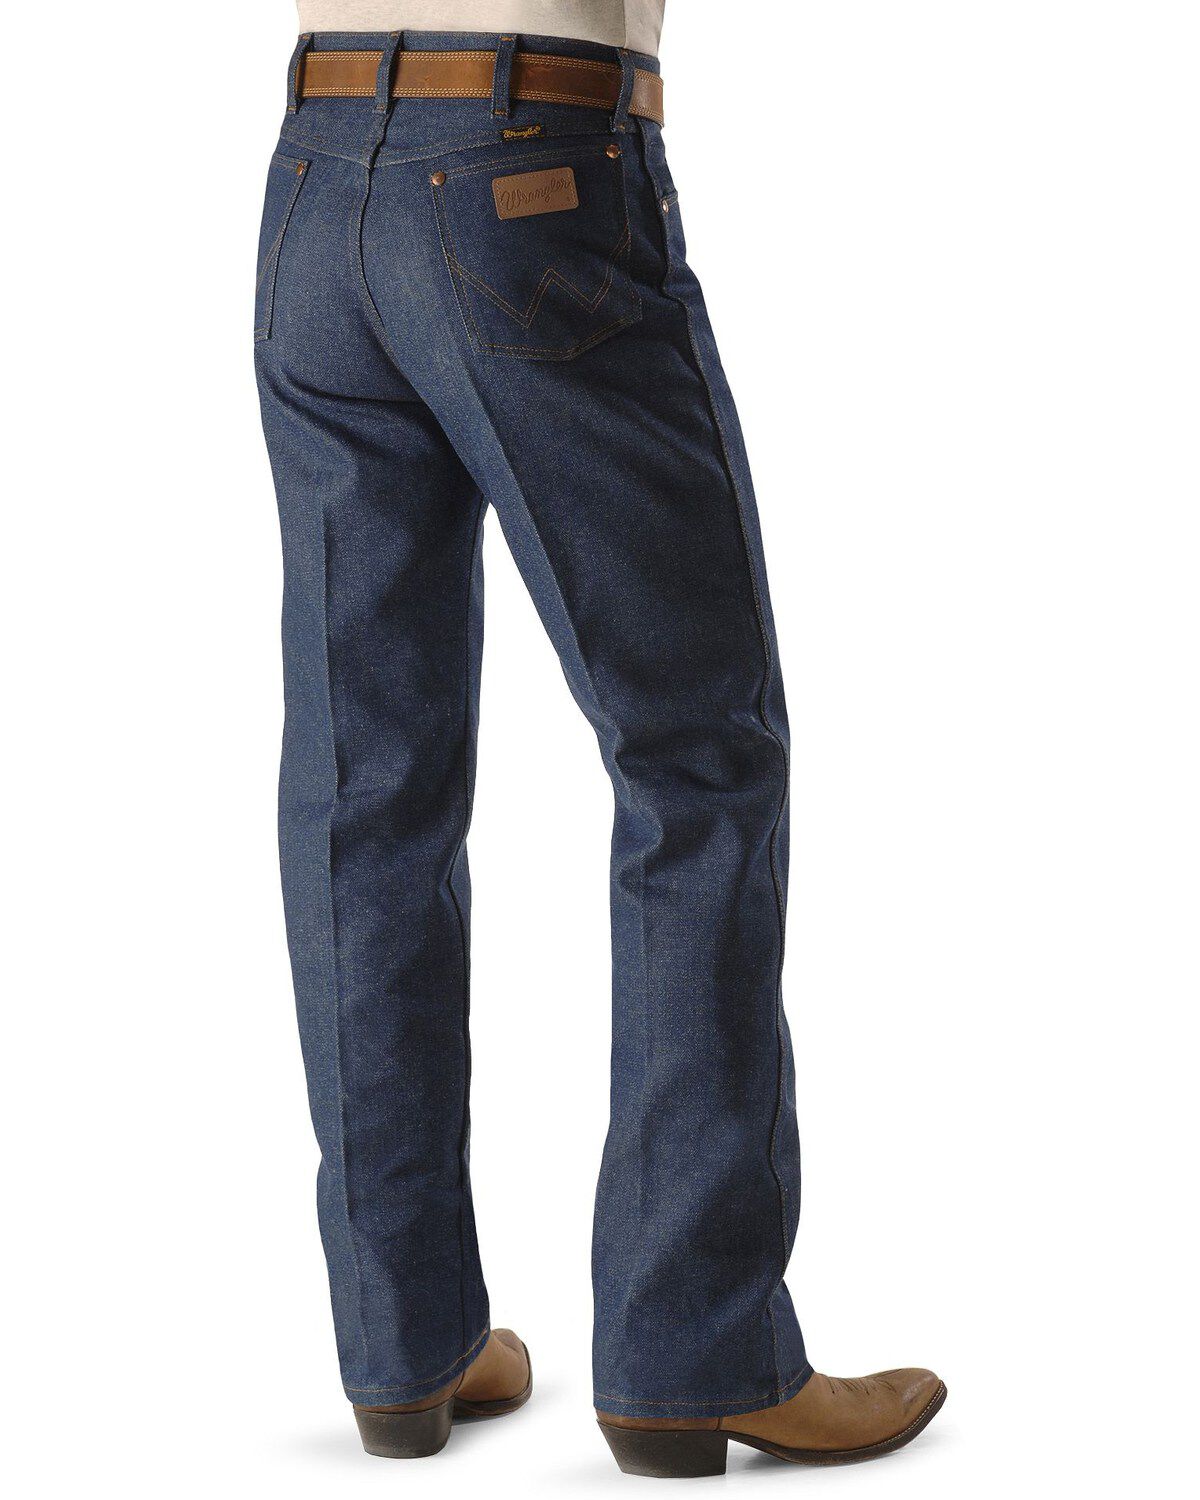 Wrangler Men's Jeans